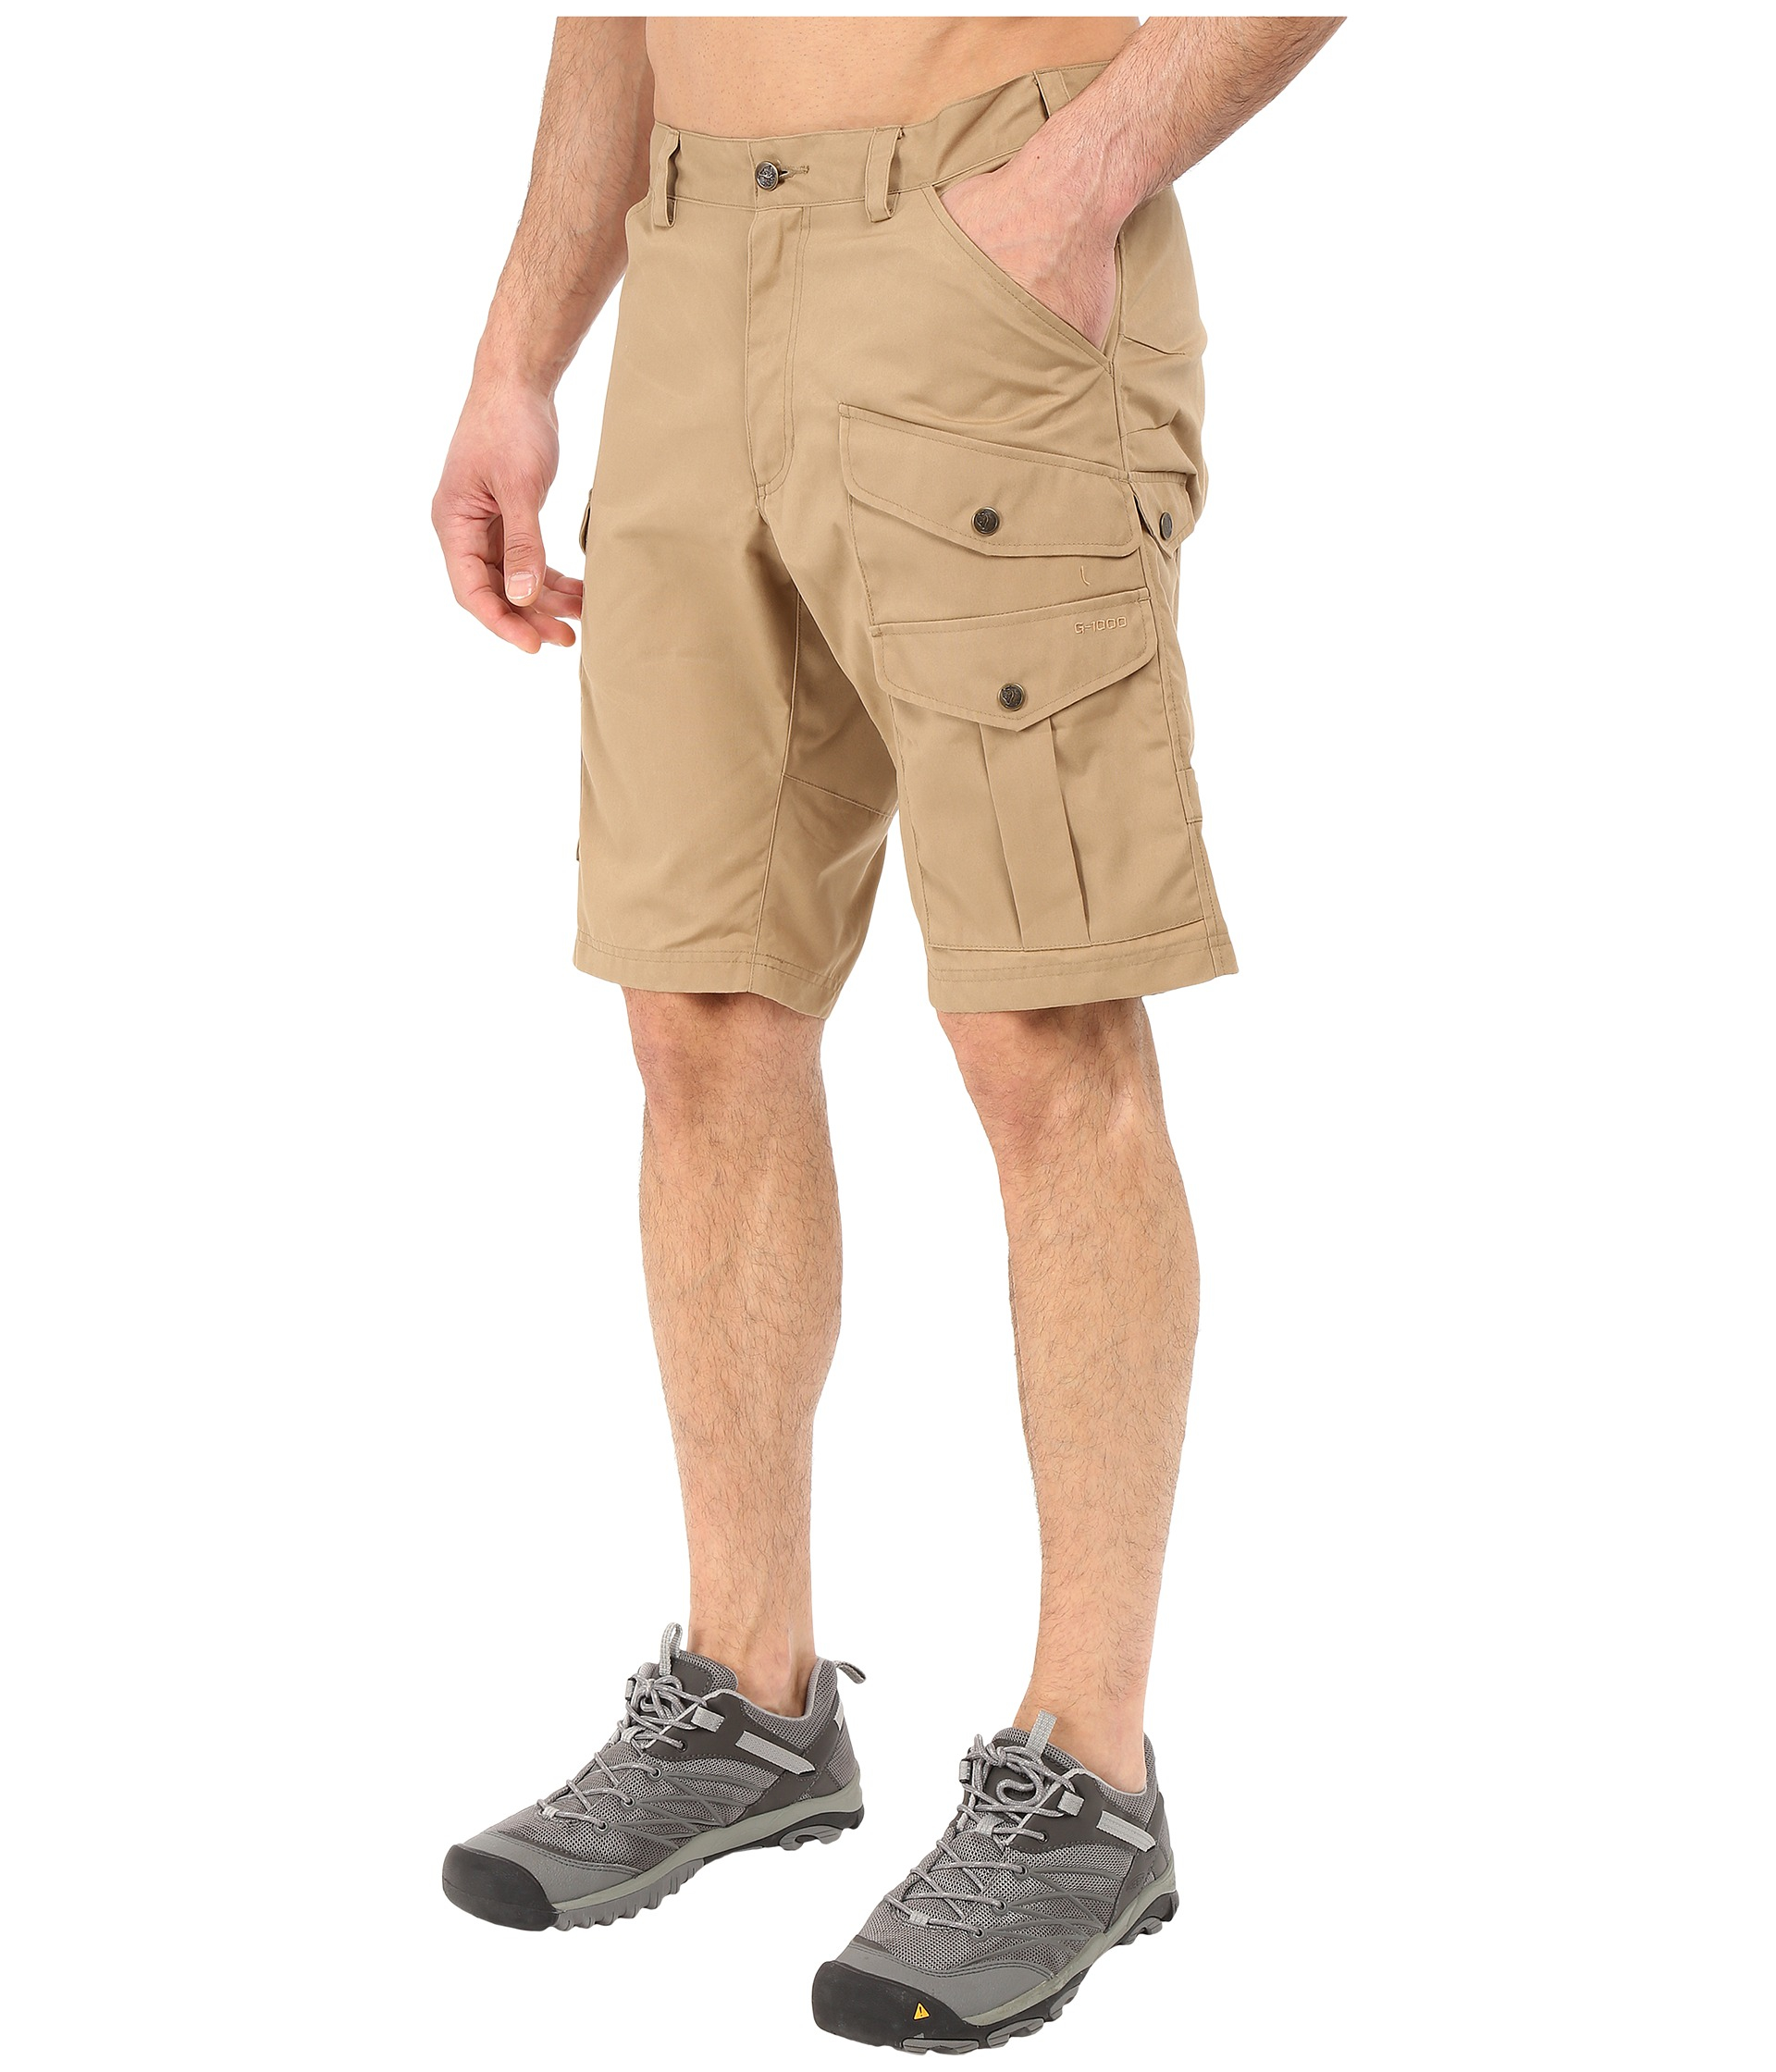 Fjallraven Synthetic Barents Pro Shorts in Sand (Natural) for Men ... ظلال العيون